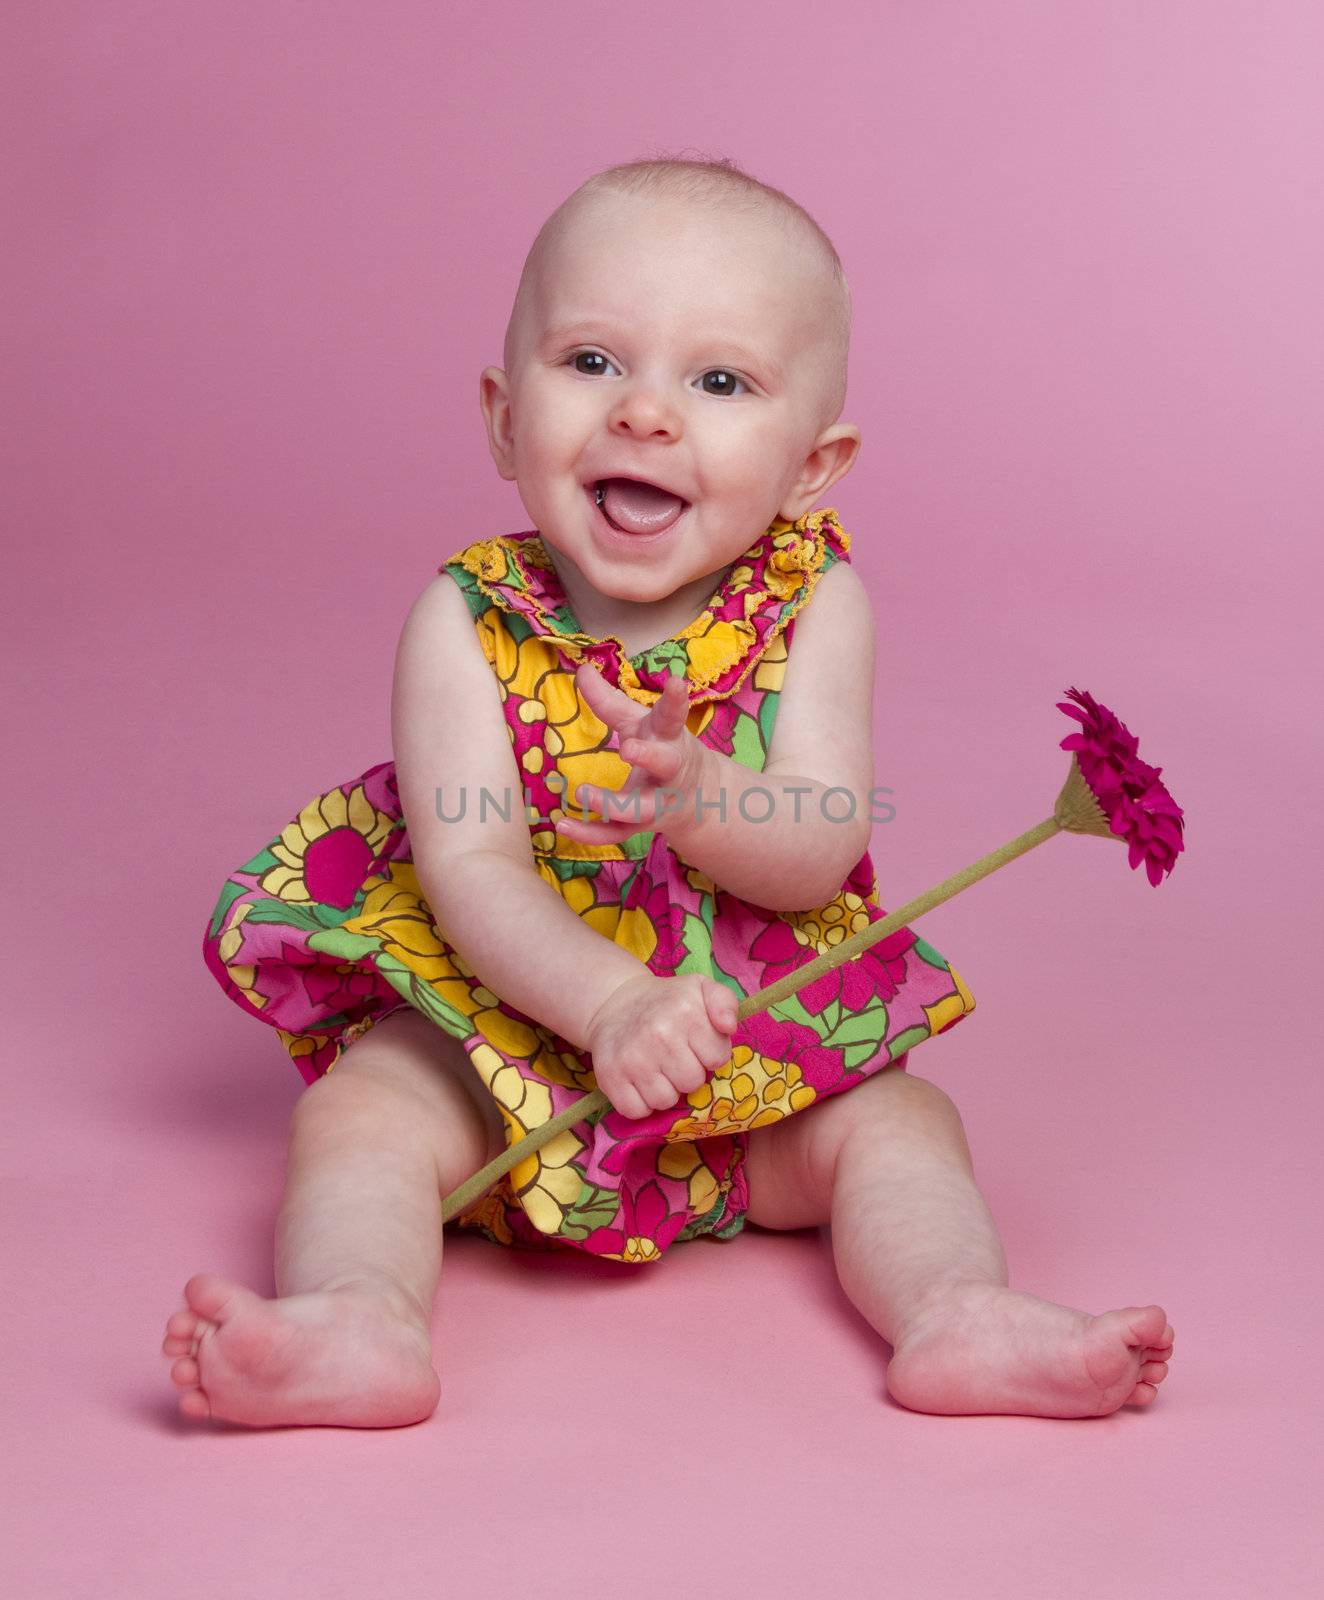 Smiling baby girl holding flower